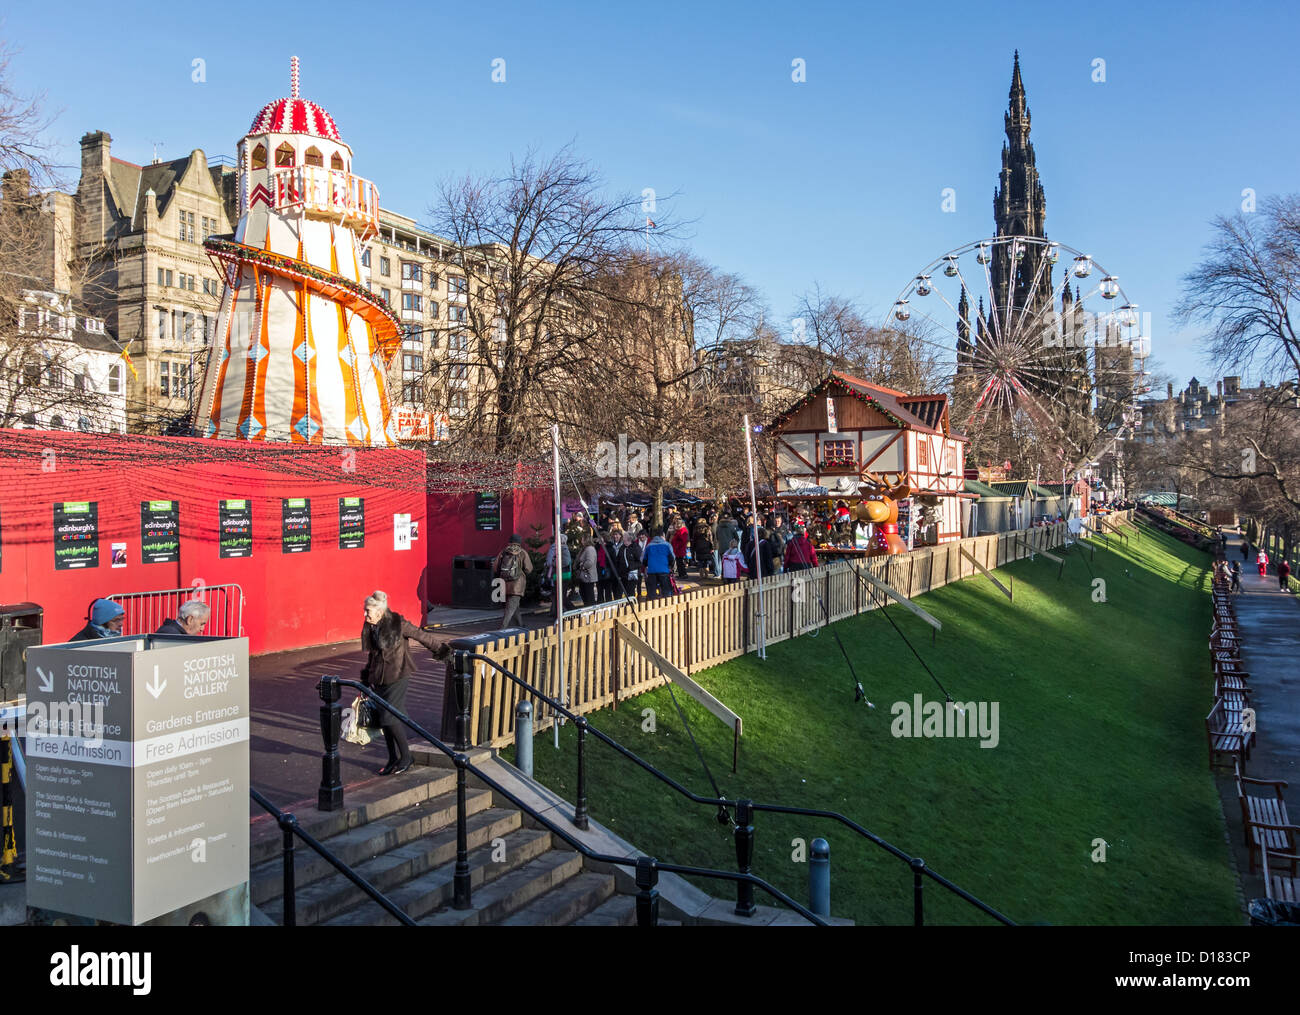 Ver más "Highland Village' en el este de Princes Street Gardens en Edimburgo, Escocia, con entretenimiento de Navidad Foto de stock